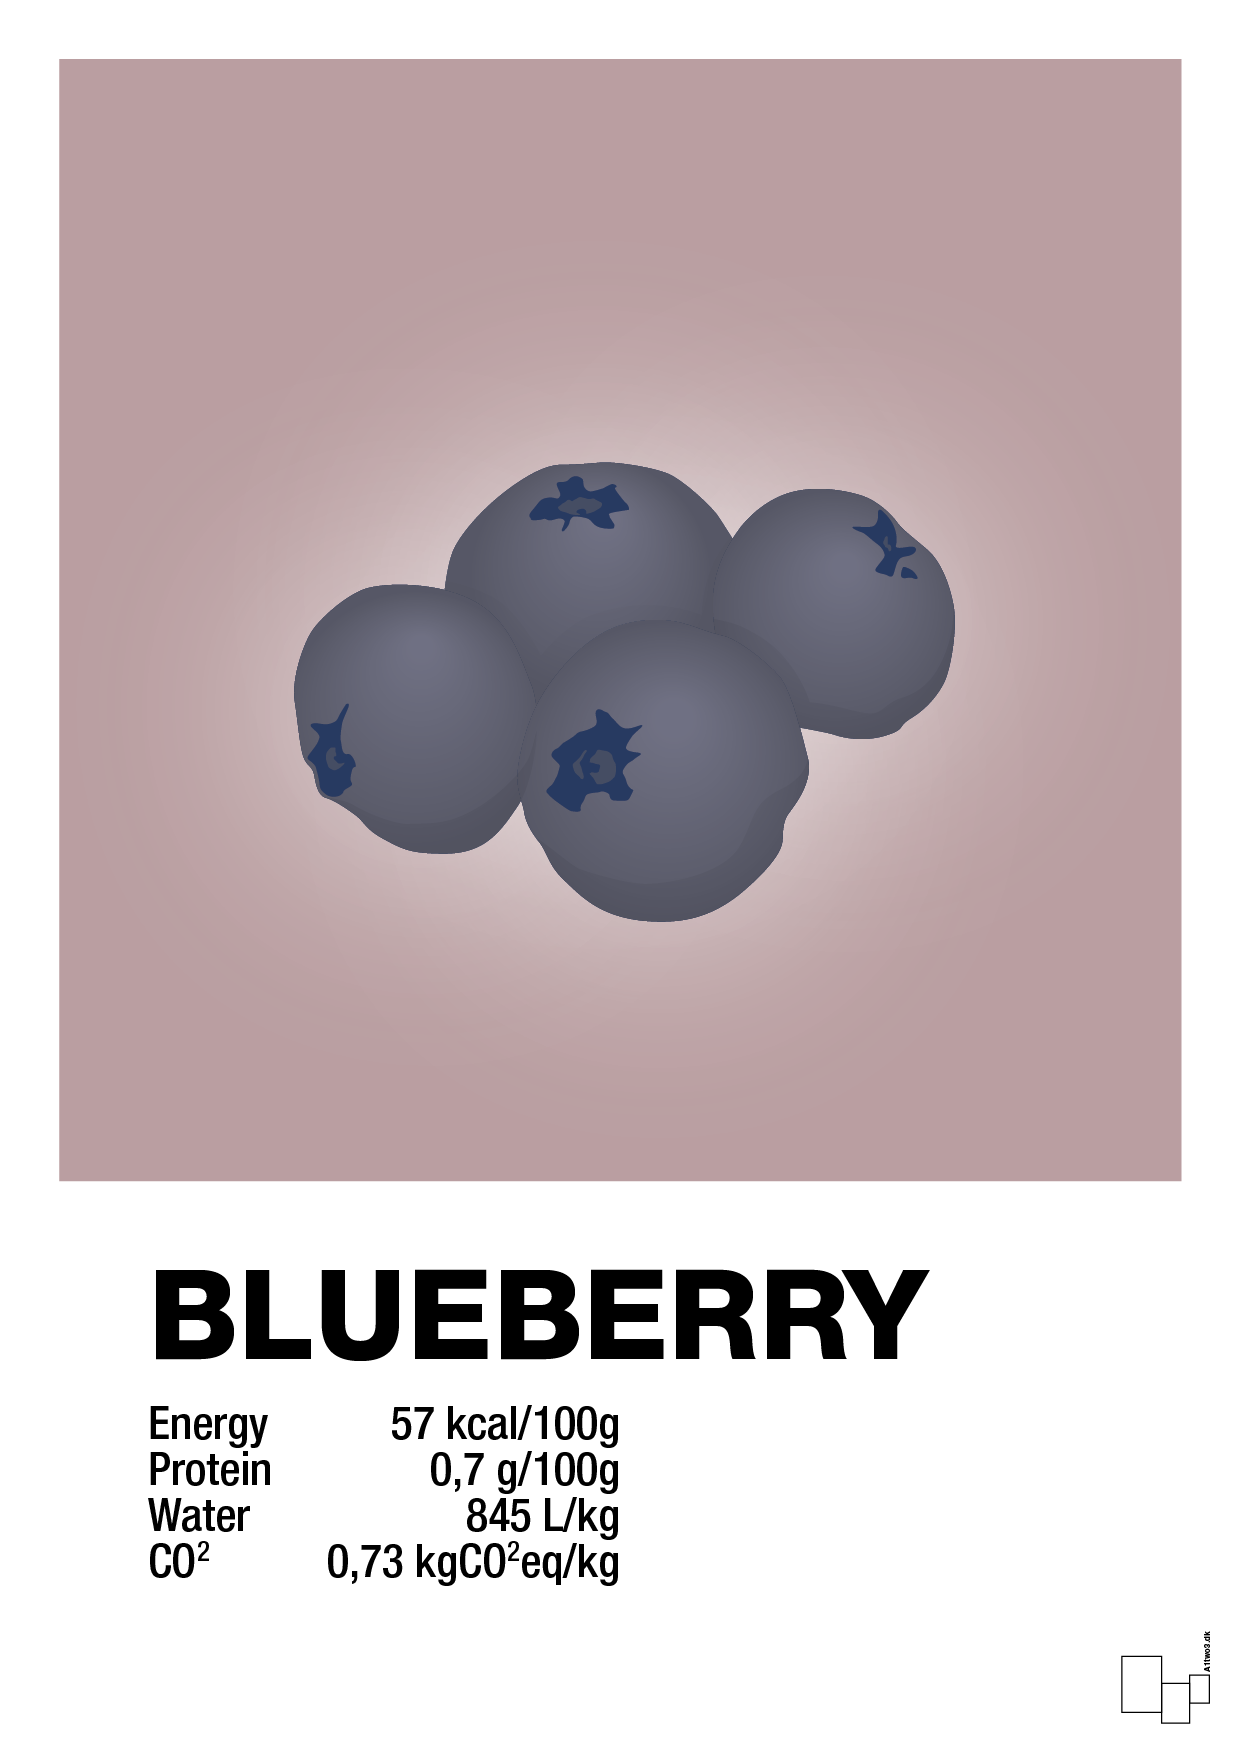 blueberry nutrition og miljø - Plakat med Mad & Drikke i Light Rose